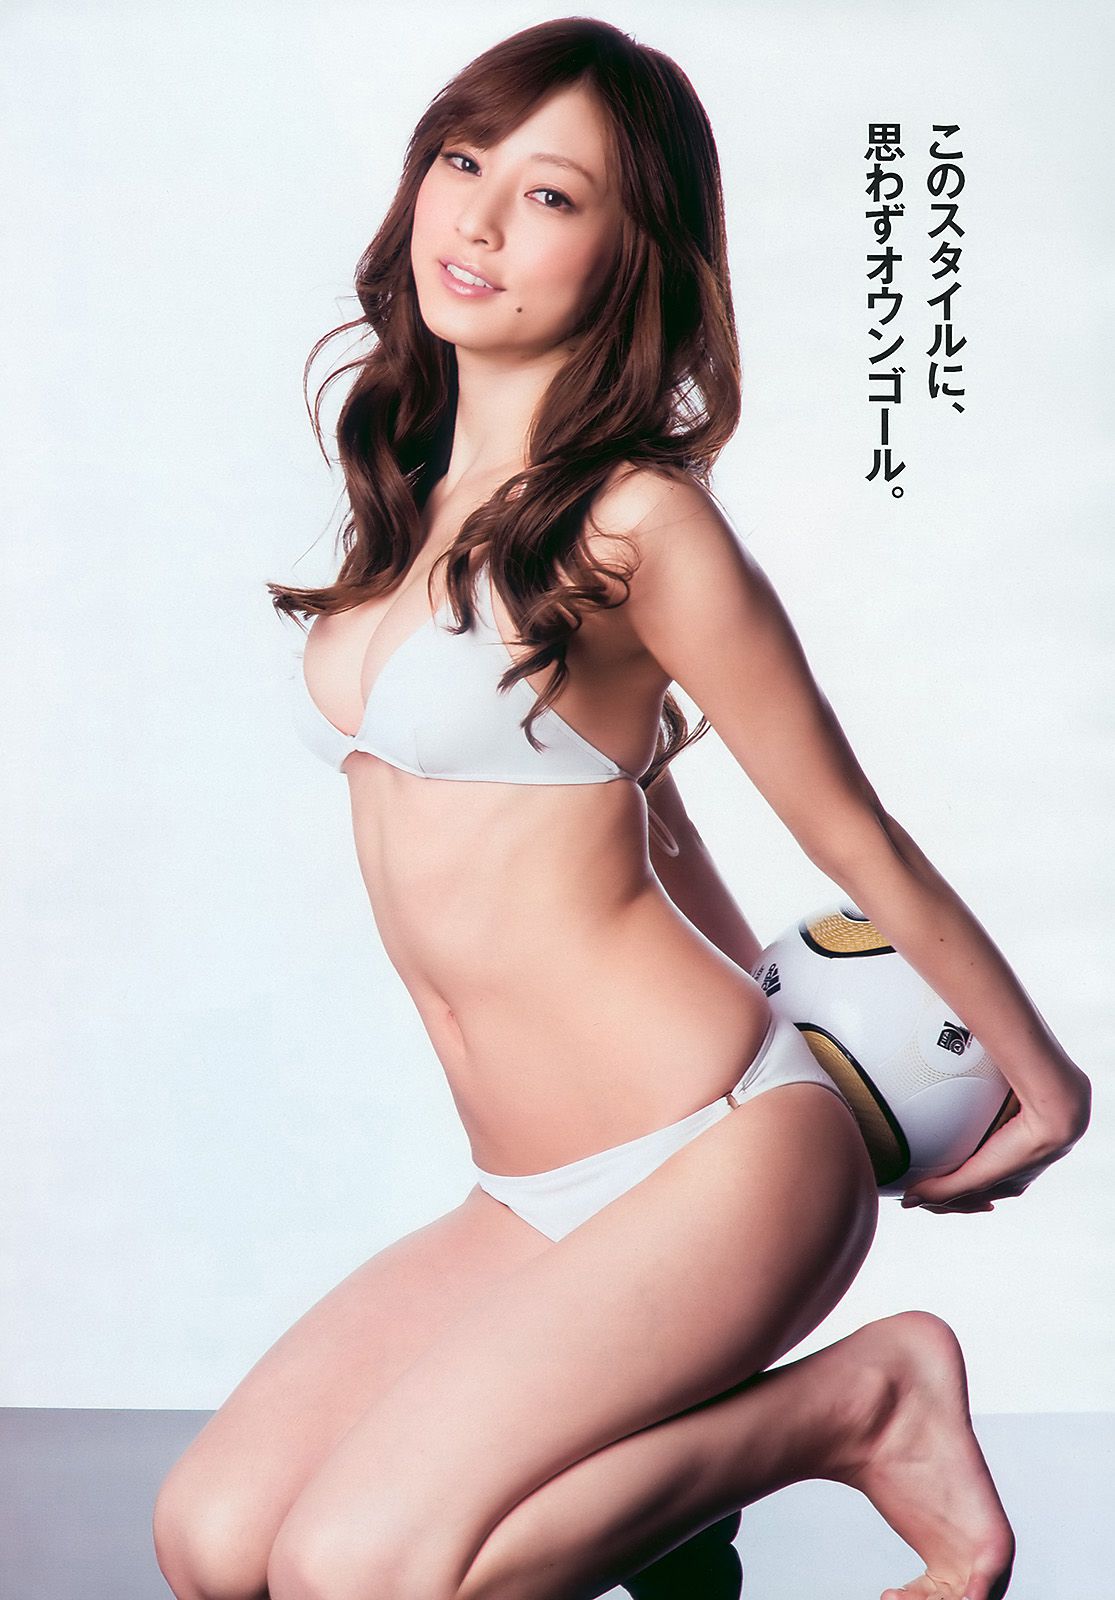 Yumi Sugimoto Natsuki Ikeda Ai Matsuoka Nene Weekly Playboy 2010 No.26 Phot...